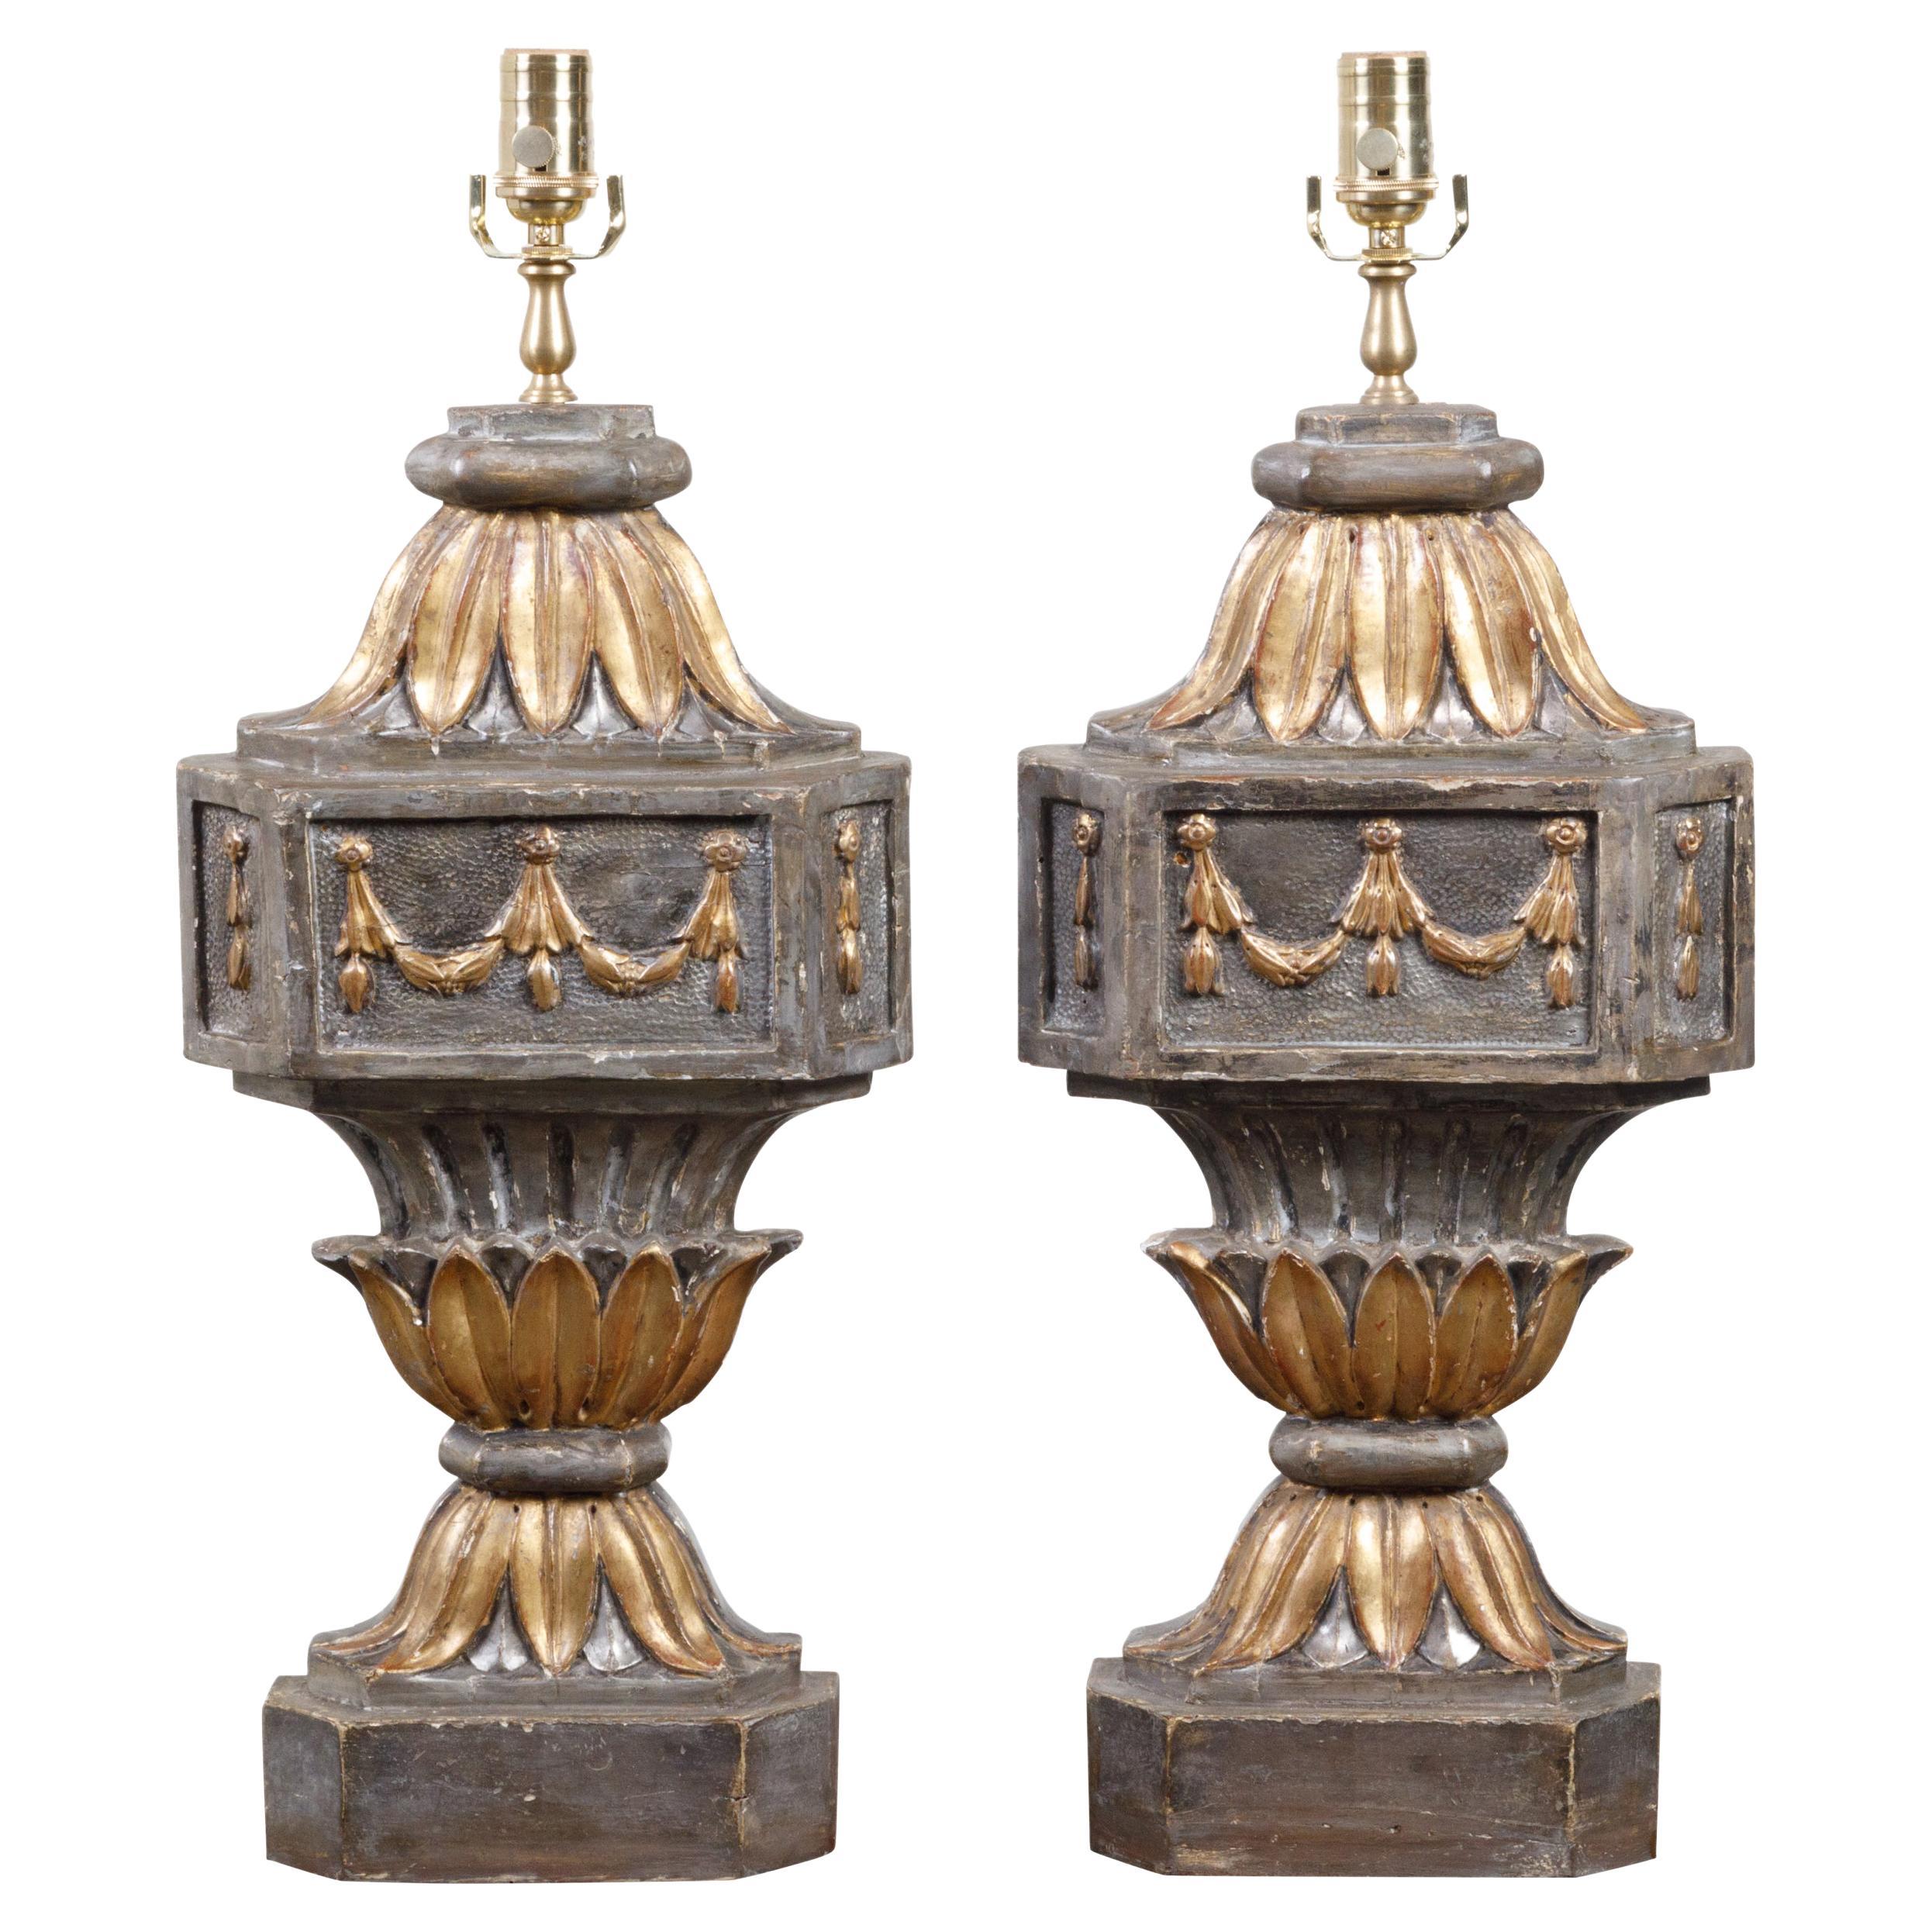 Paire de fragments de lampe de bureau du 18ème siècle sculptés et dorés transformés en lampes